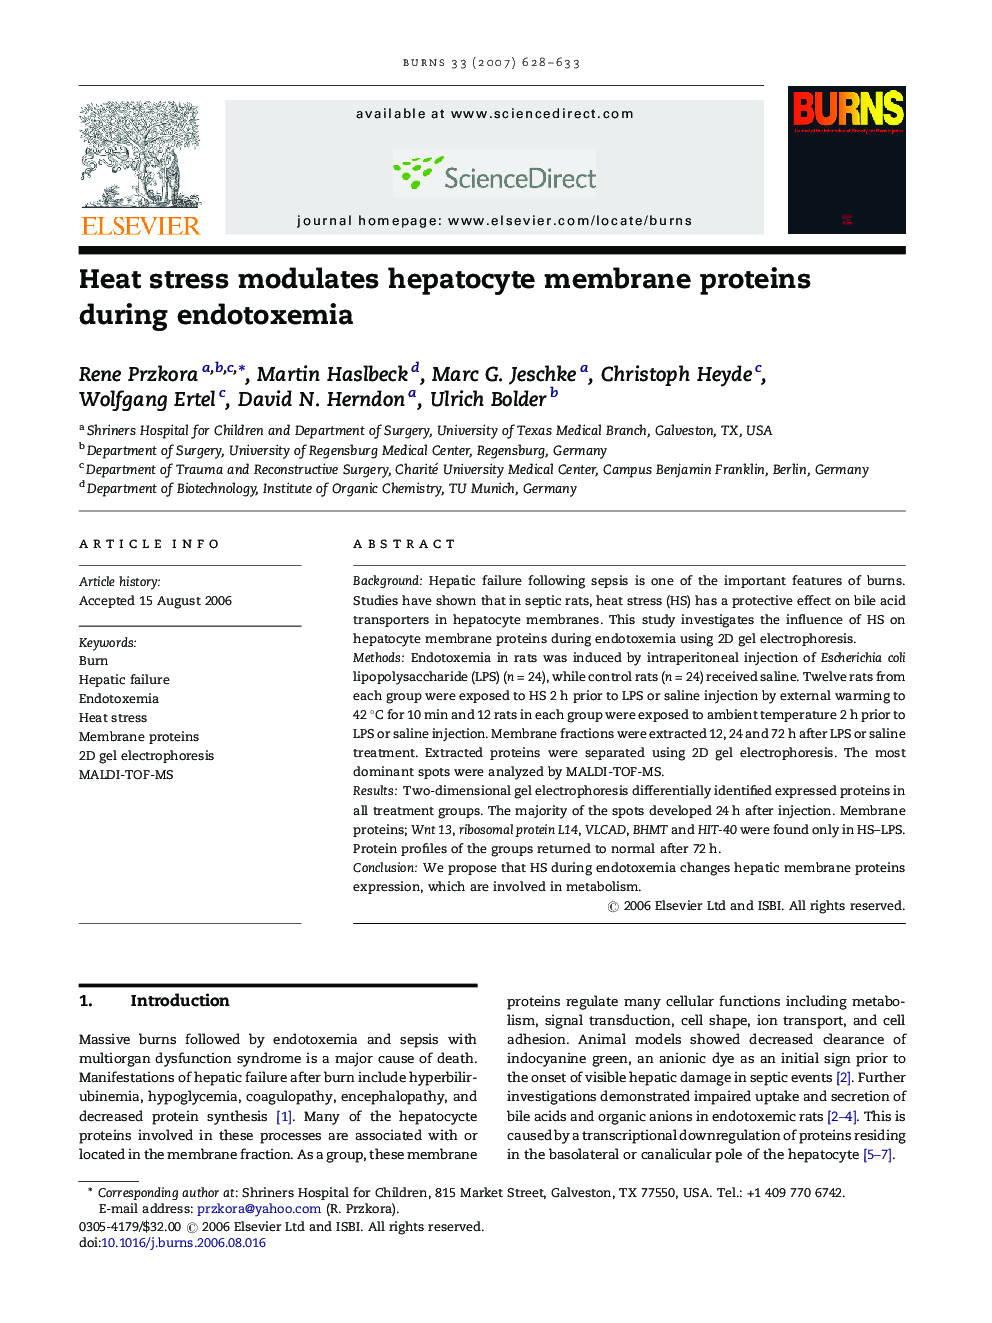 Heat stress modulates hepatocyte membrane proteins during endotoxemia